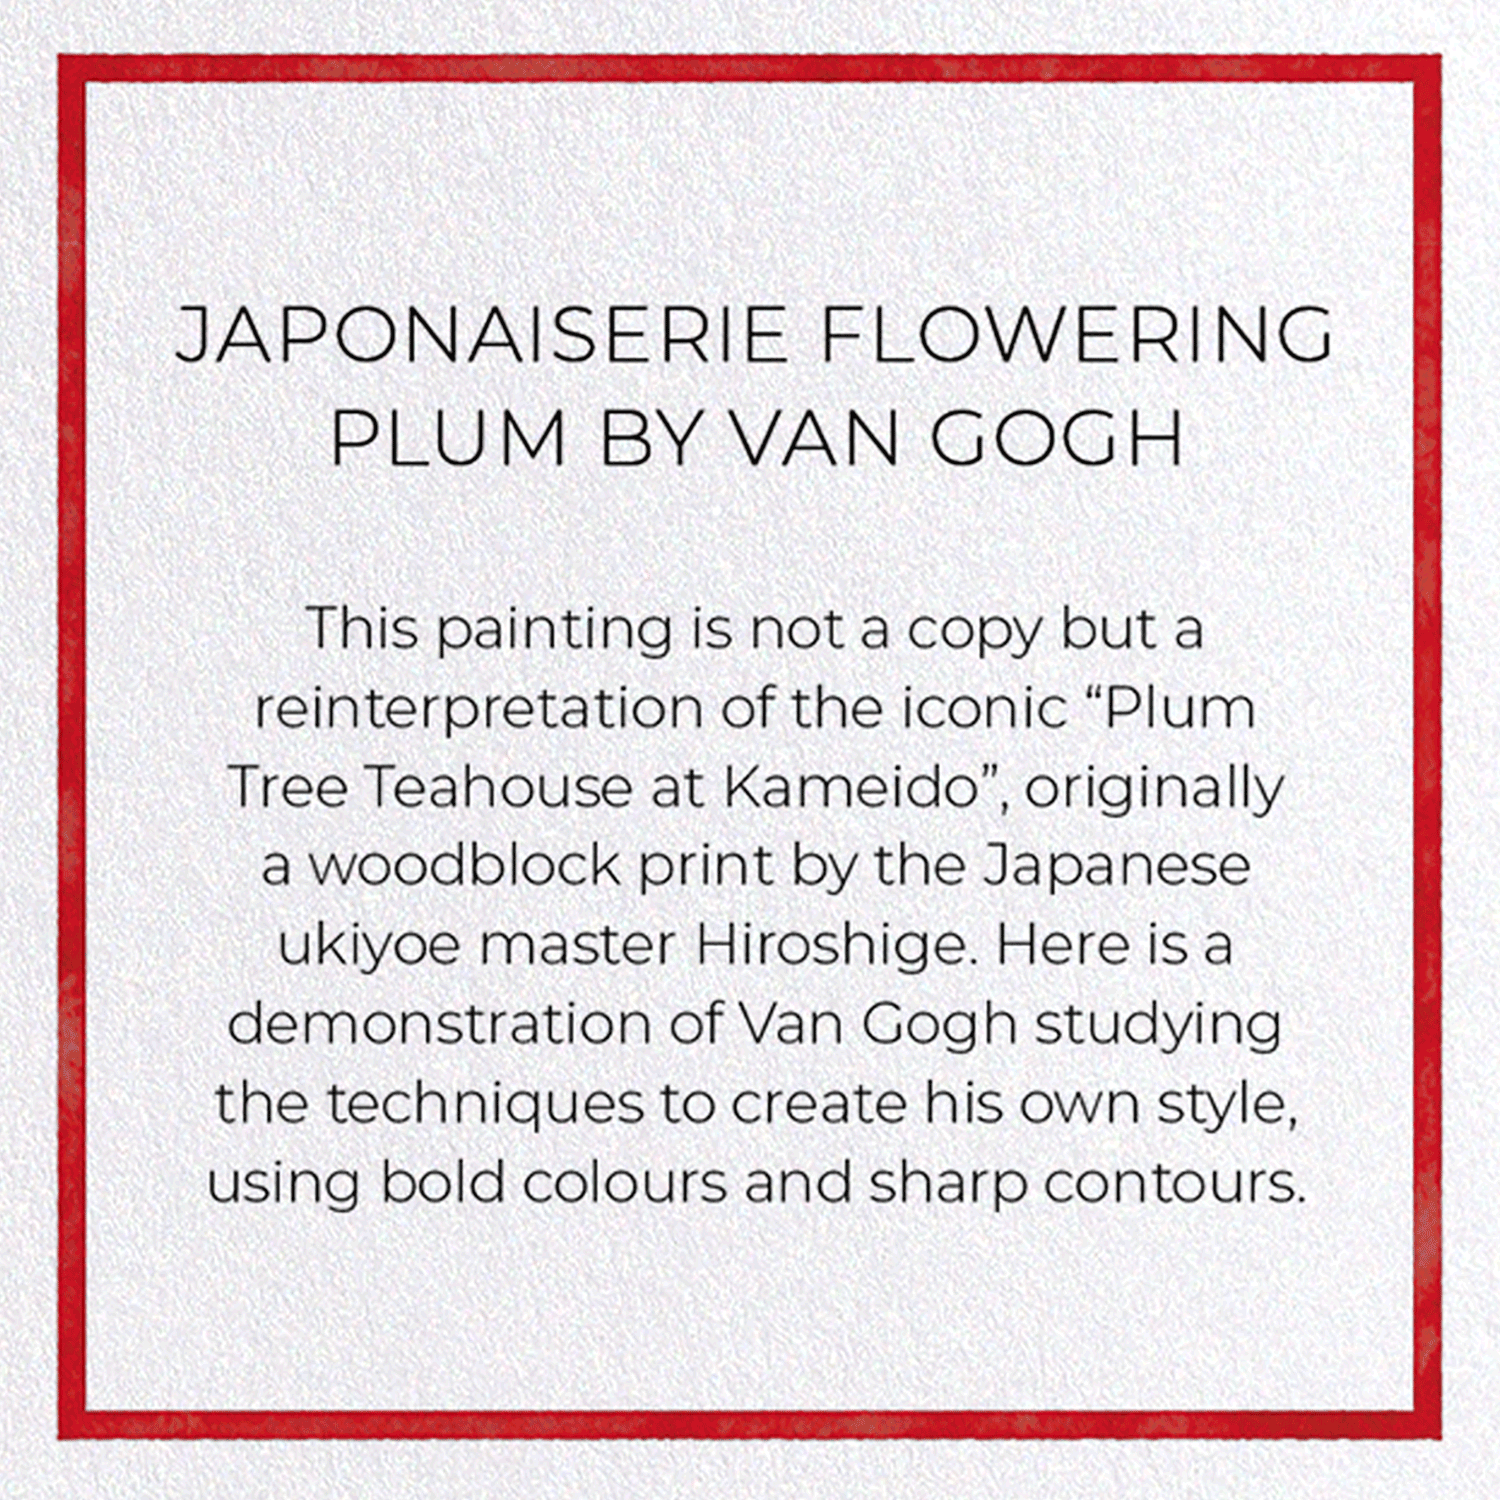 JAPONAISERIE FLOWERING PLUM BY VAN GOGH